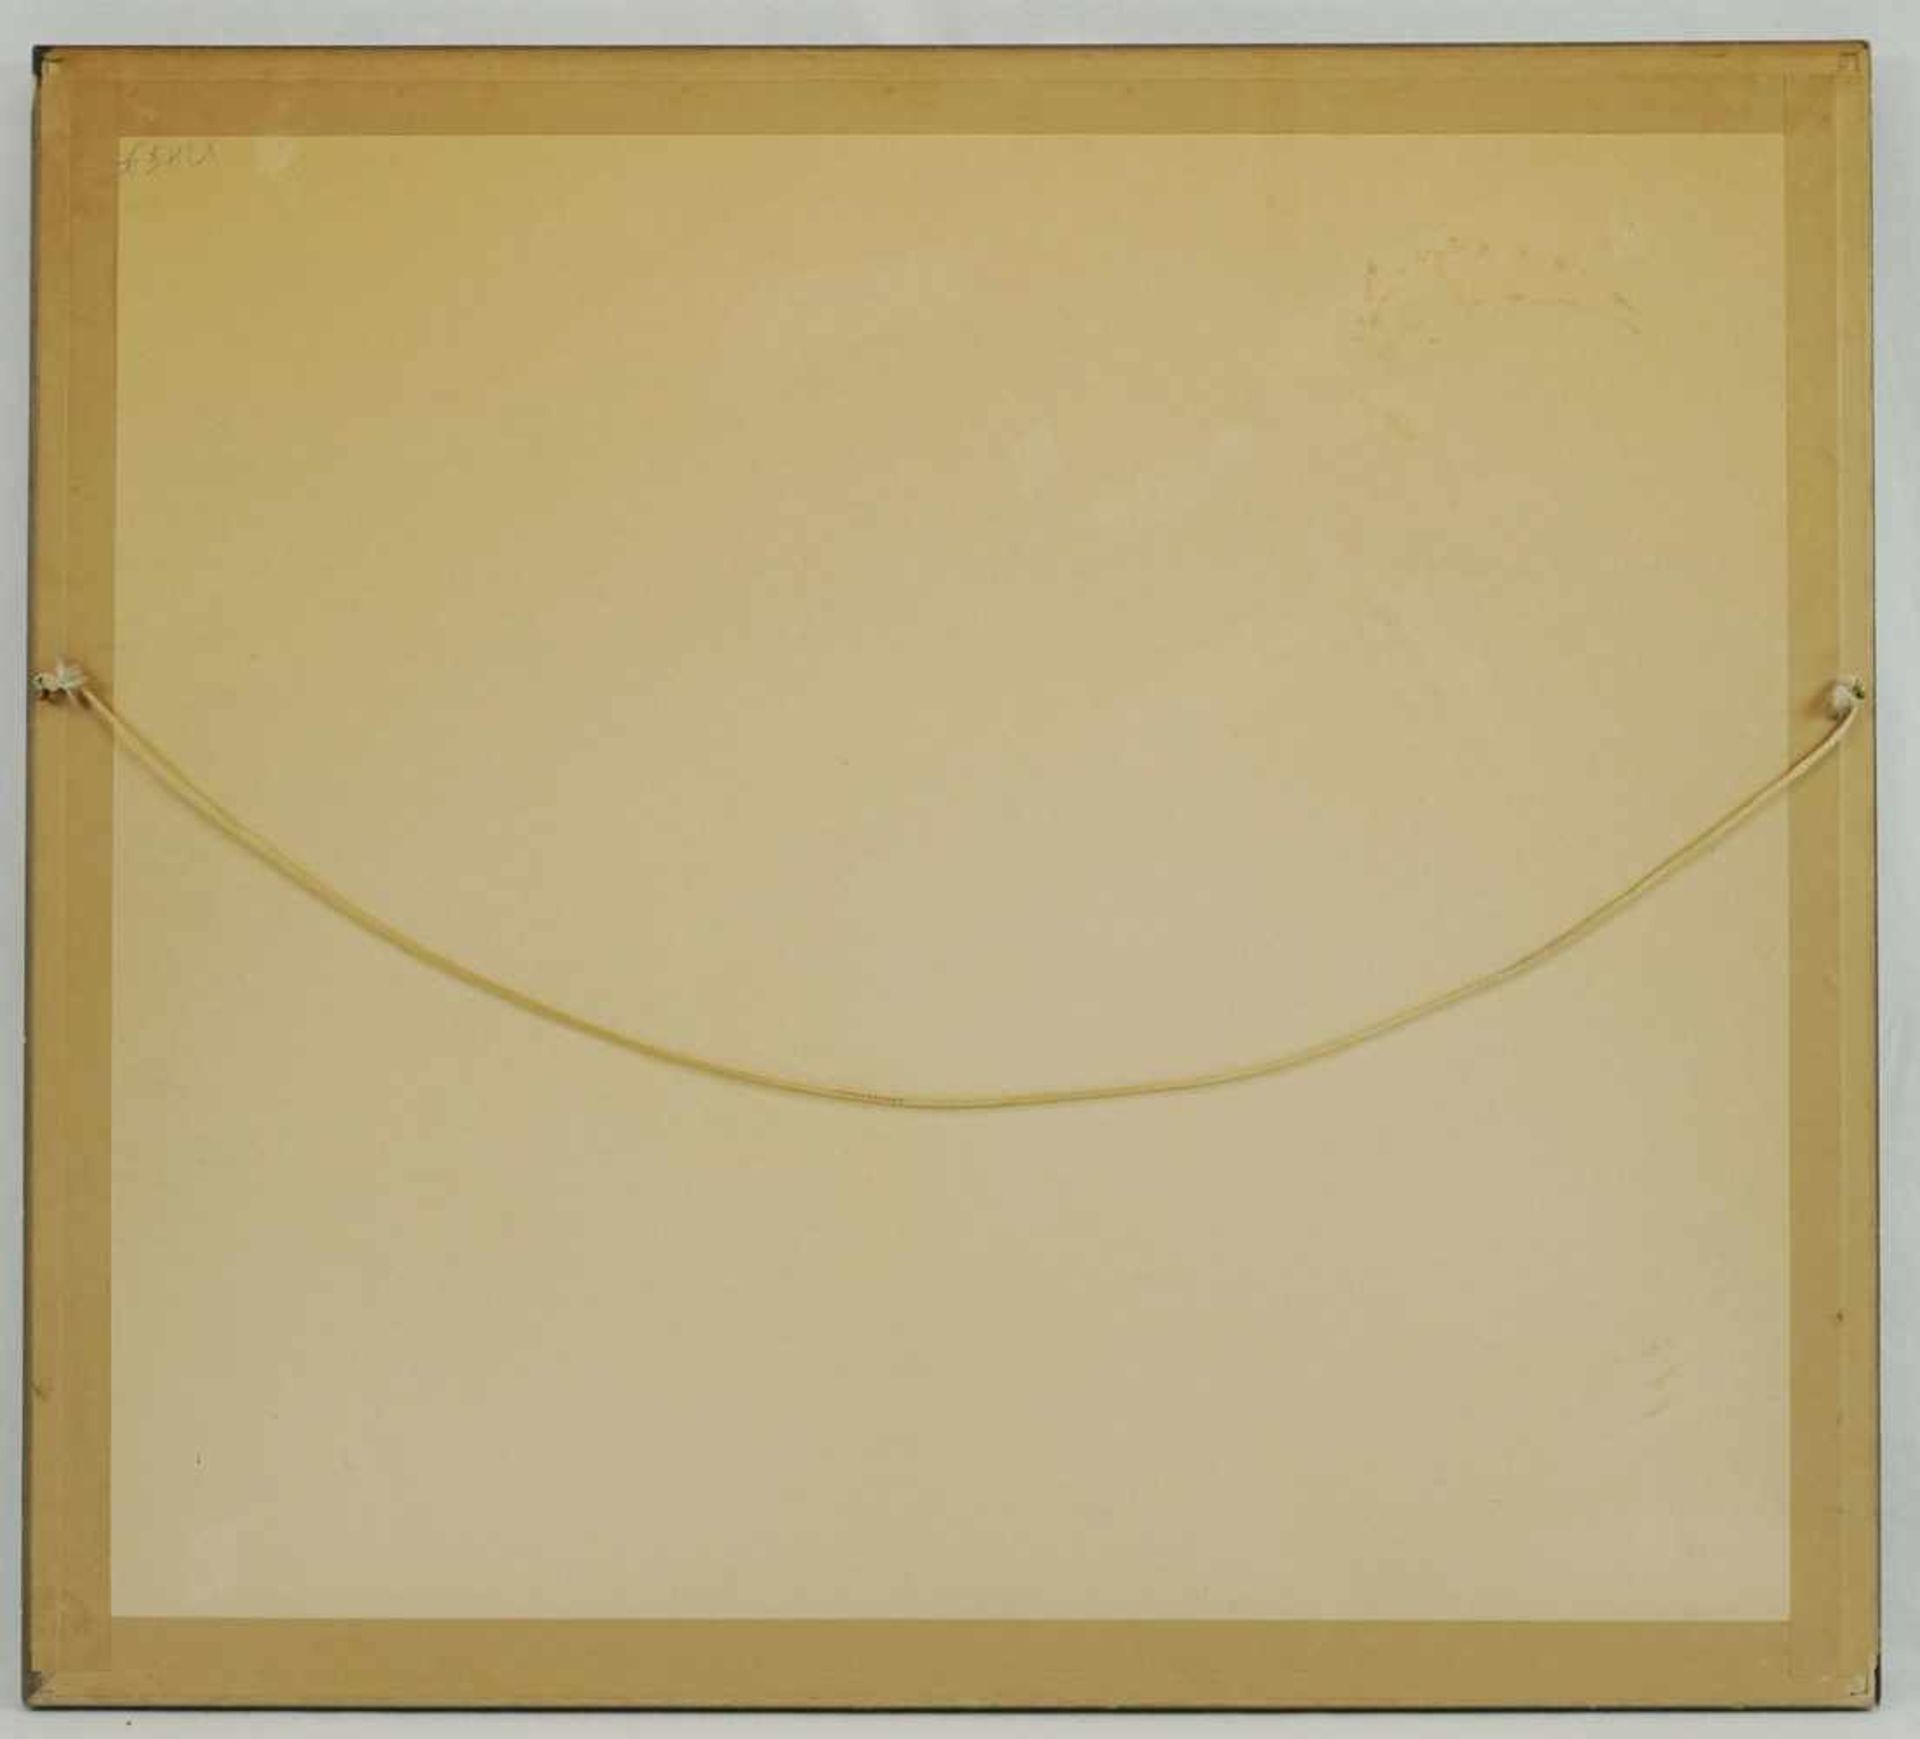 Unbekannter Maler, "Dramatischer Sonnenuntergang"Temperamalerei, guter Zustand, 45 x 54 cm (HxB), - Bild 3 aus 4